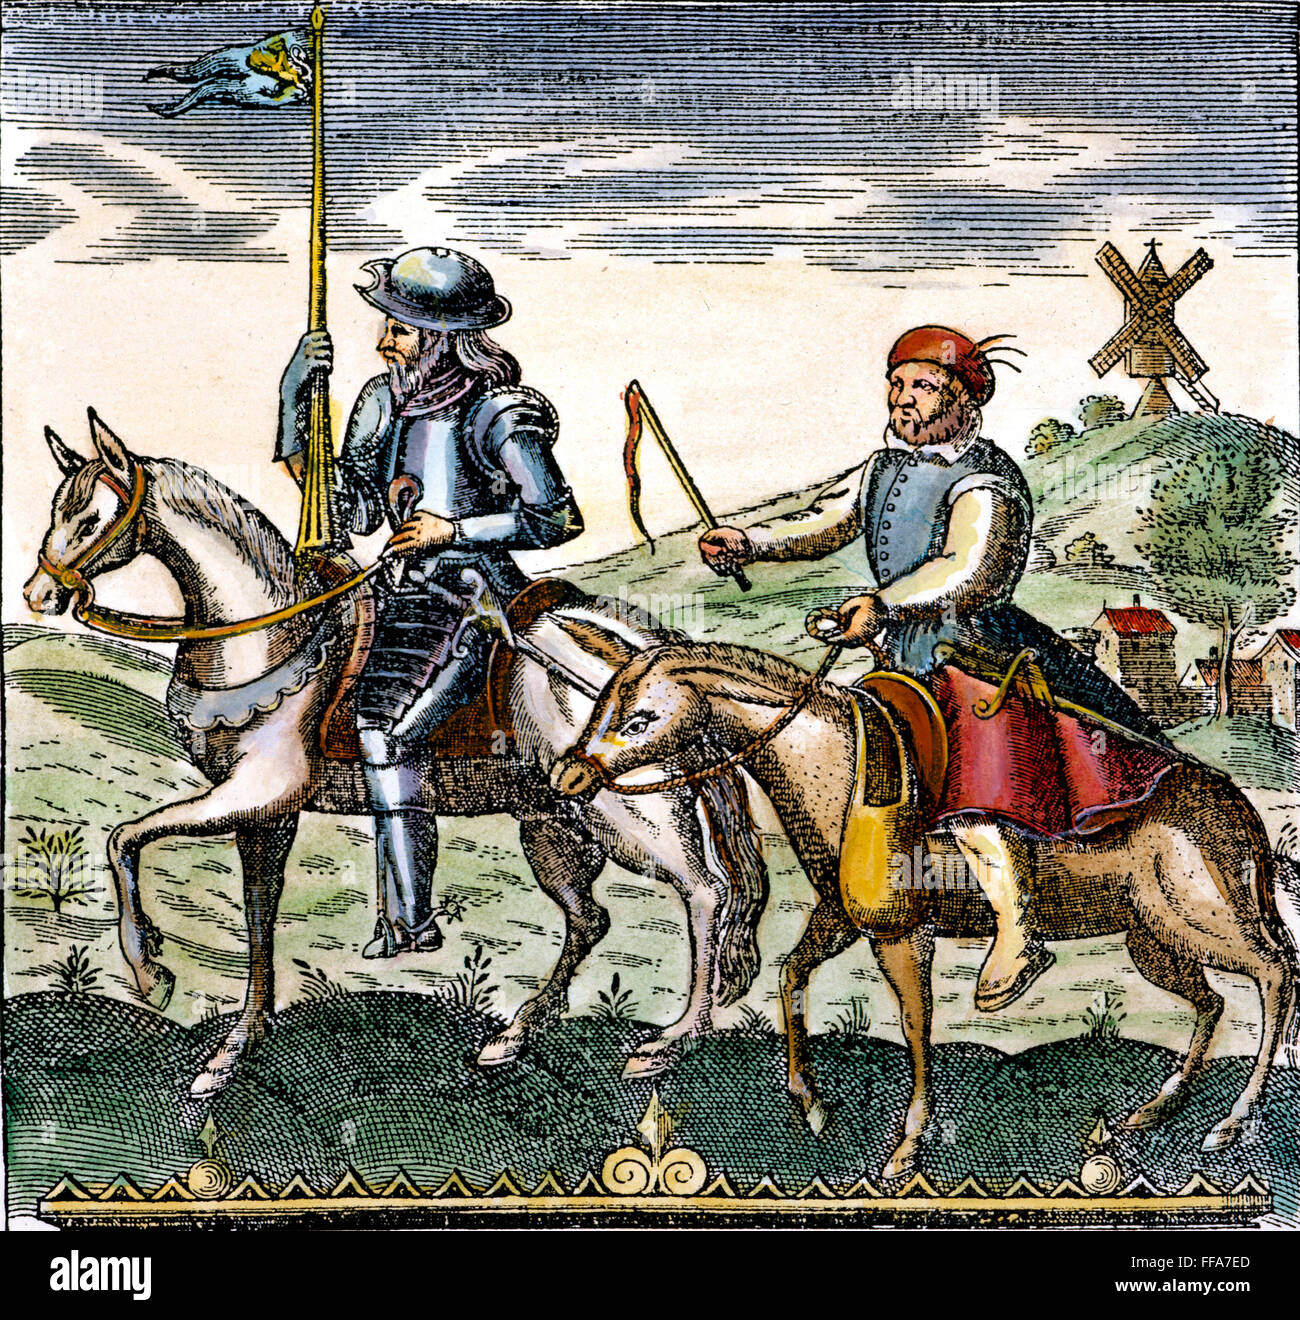 DON Quijote /nand Sancho Panza. Kupferstich aus einer frühen 17. Jahrhundert-Edition von Miguel de Cervantes "Don Quixote". Stockfoto